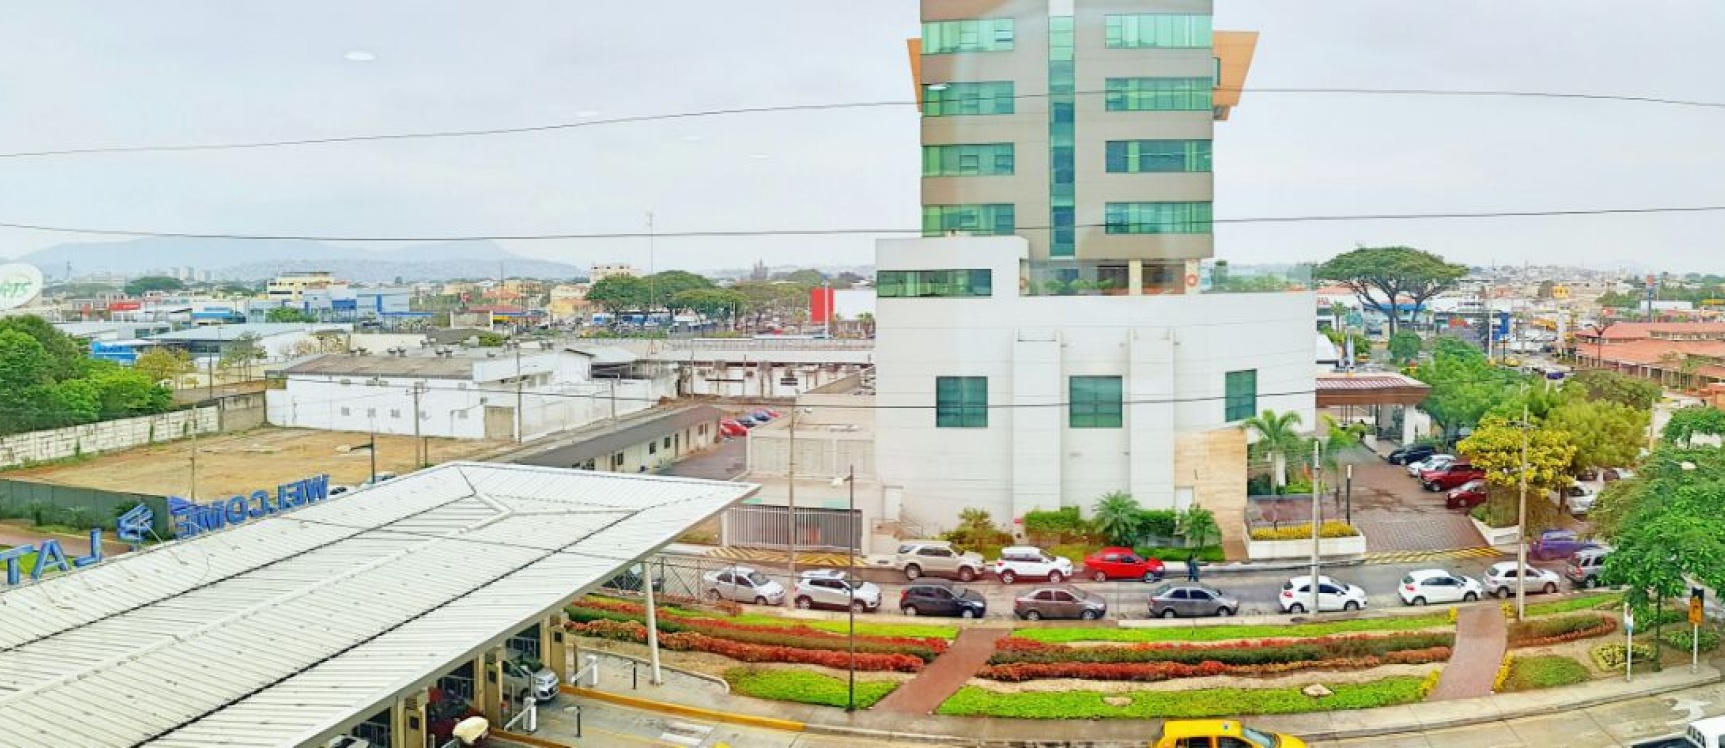 GeoBienes - Alquilo Oficina en Sky Building, norte de Guayaquil - Plusvalia Guayaquil Casas de venta y alquiler Inmobiliaria Ecuador